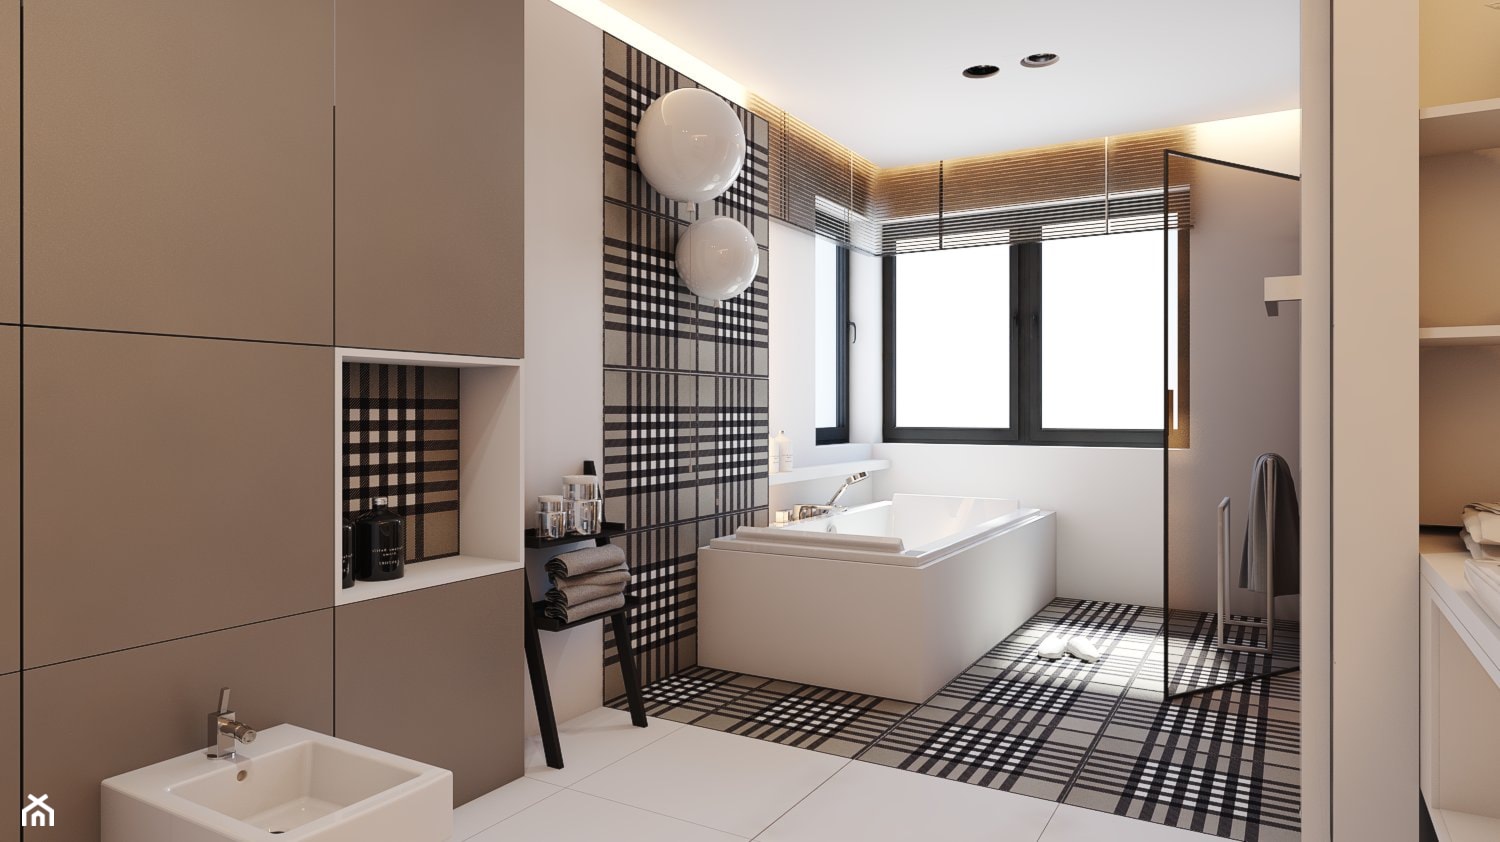 PROJEKT D19_15 / WARSZAWA _ ŁAZIENKA - Duża jako pokój kąpielowy łazienka, styl minimalistyczny - zdjęcie od A2 STUDIO pracownia architektury - Homebook